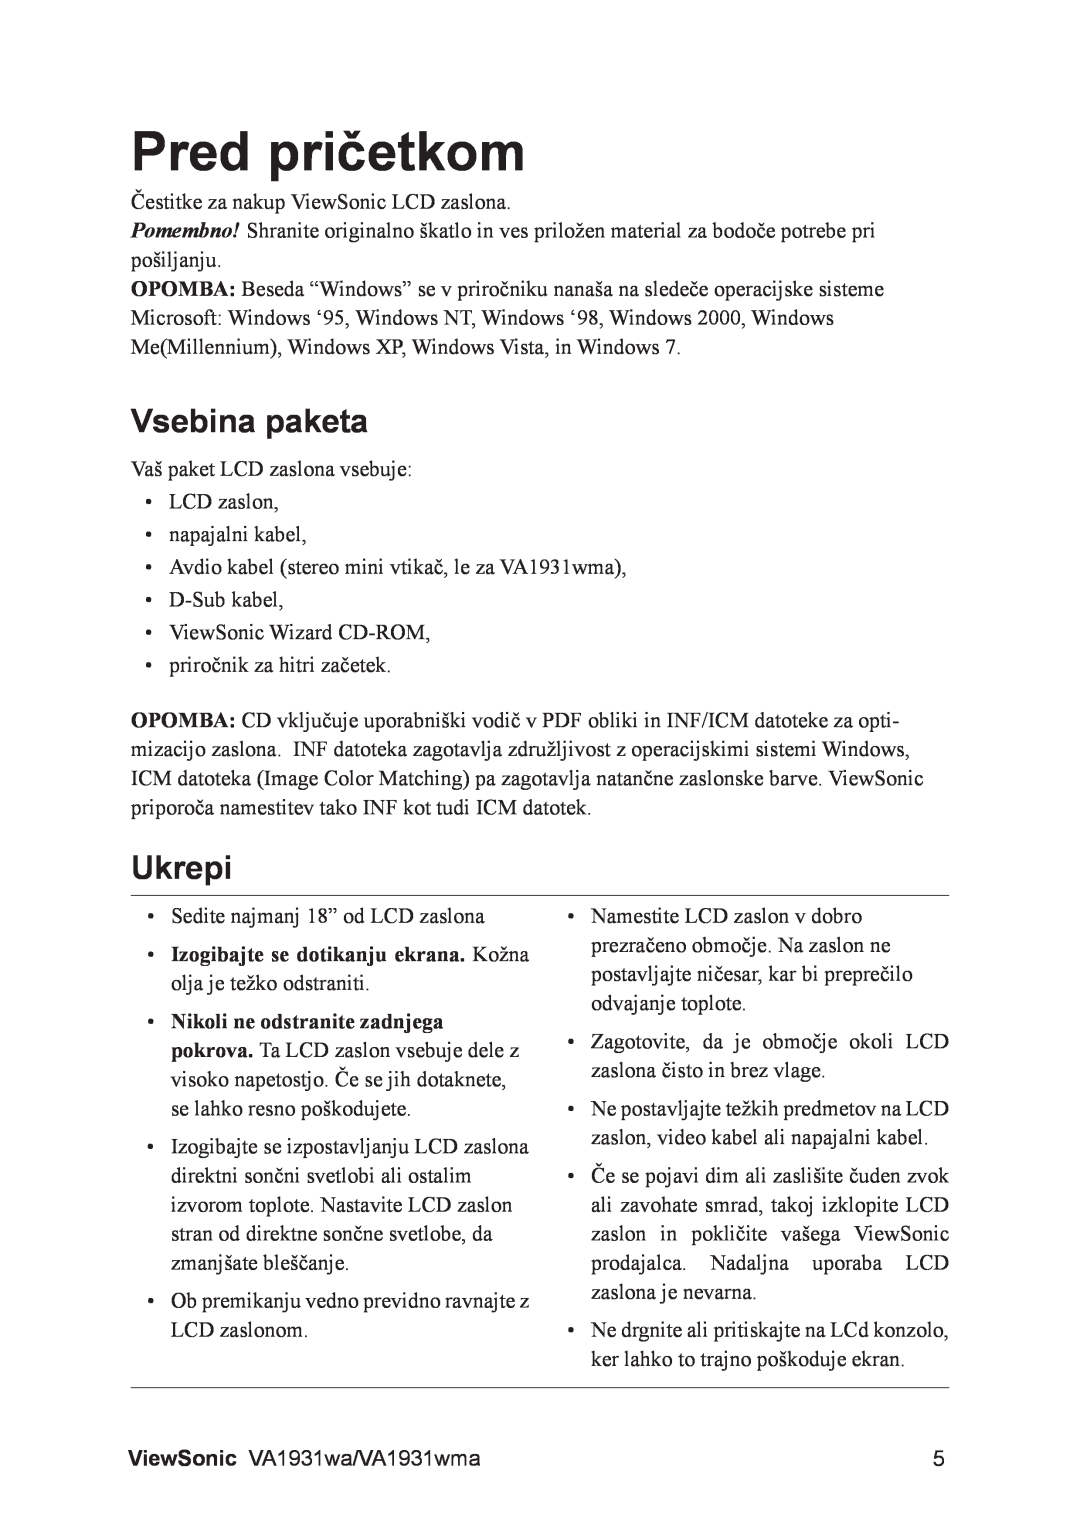 ViewSonic VS13208, VA1931WMA manual Pred pričetkom, Vsebina paketa, Ukrepi 